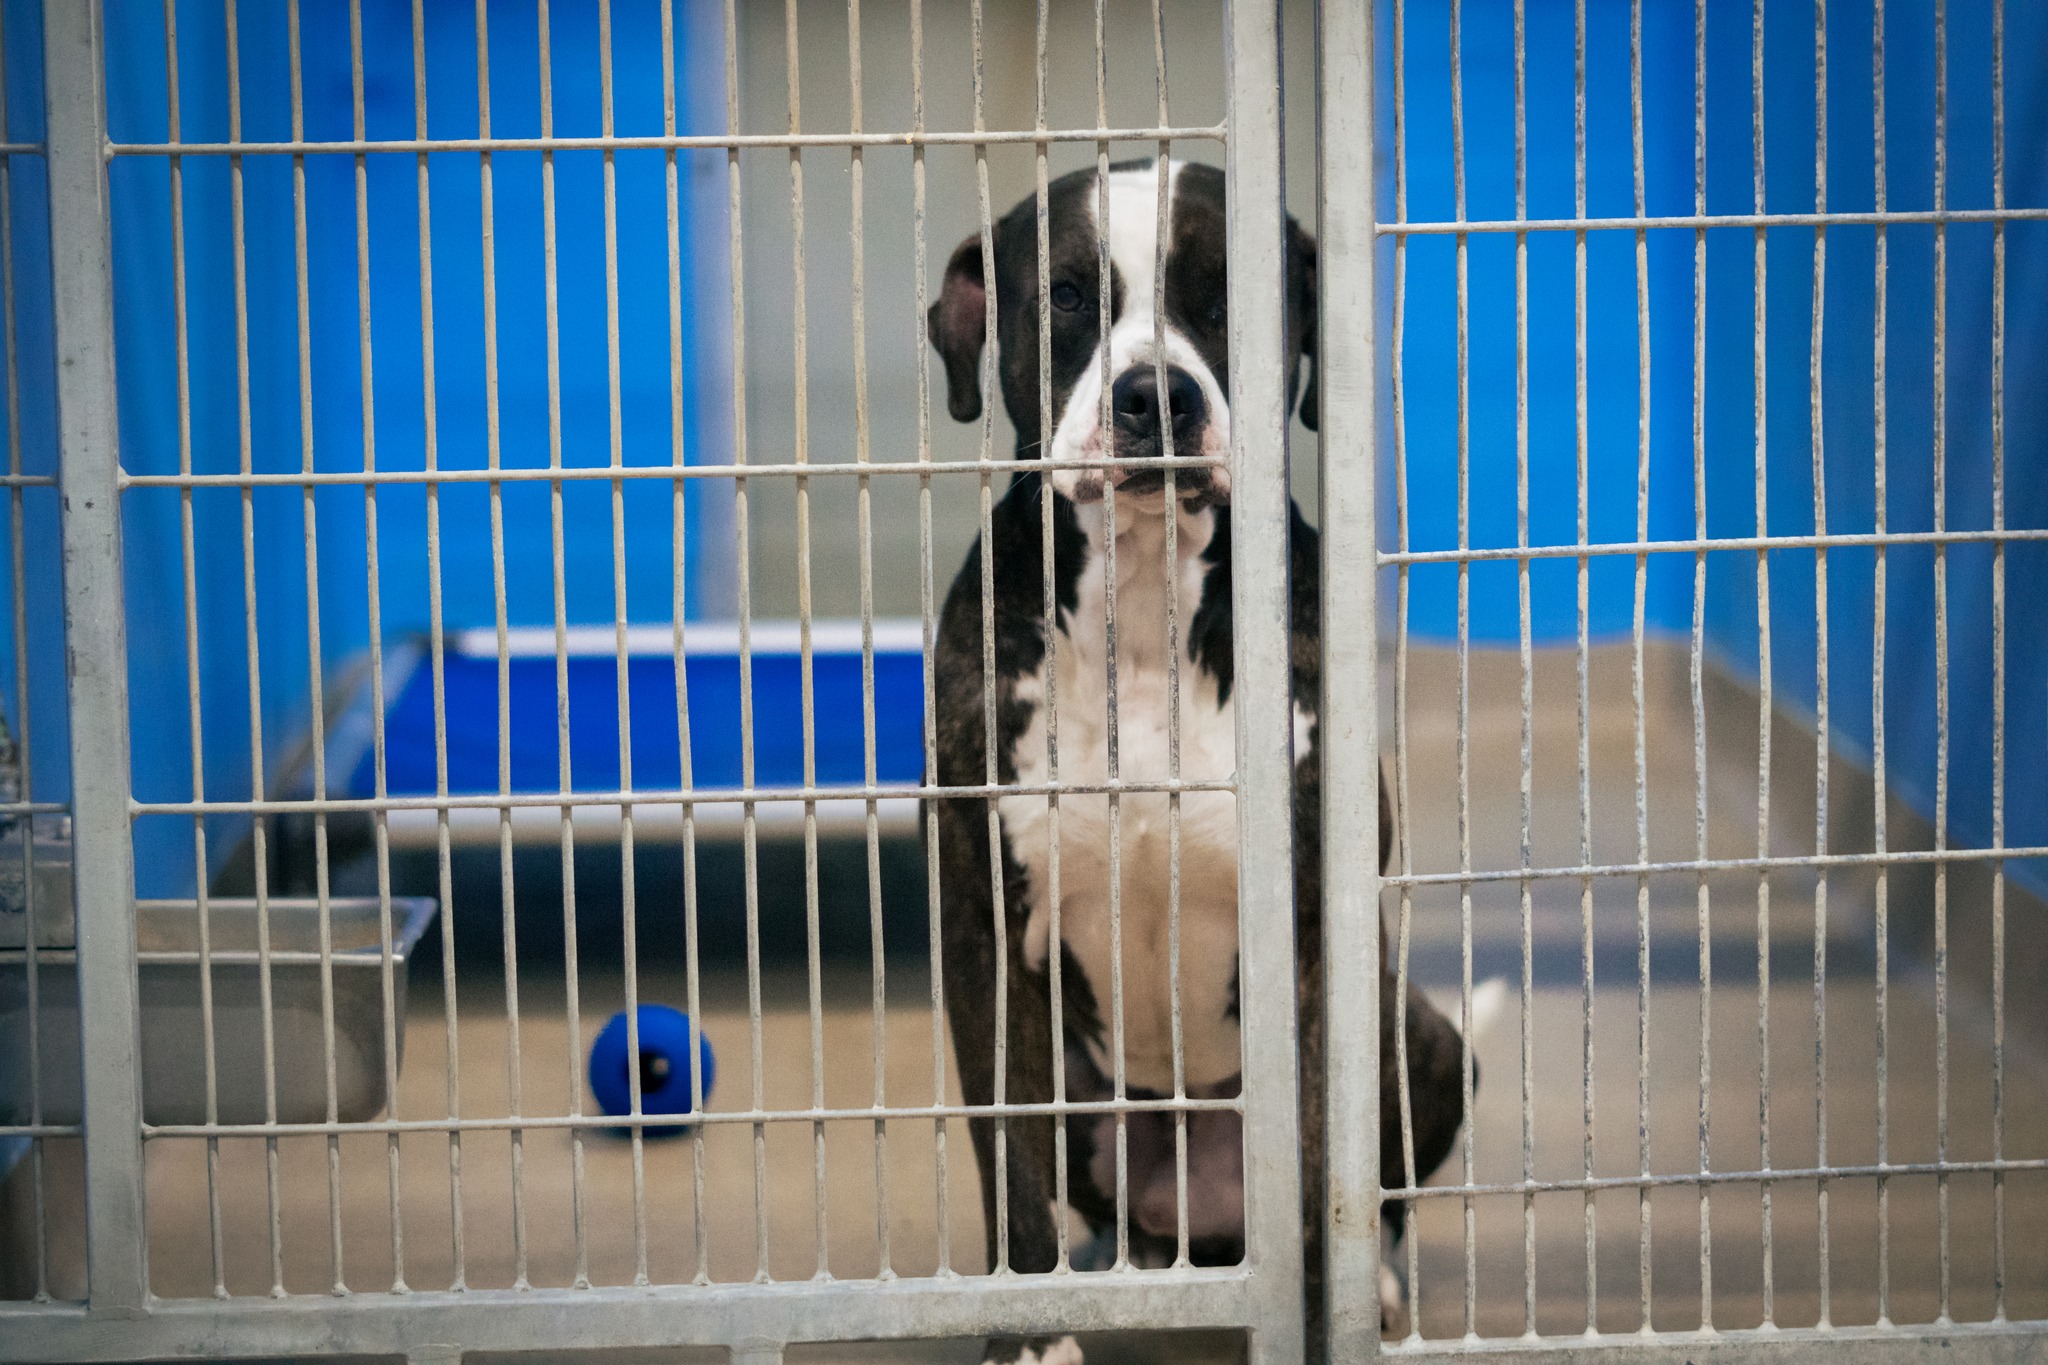 sad dog sitting in a kennel